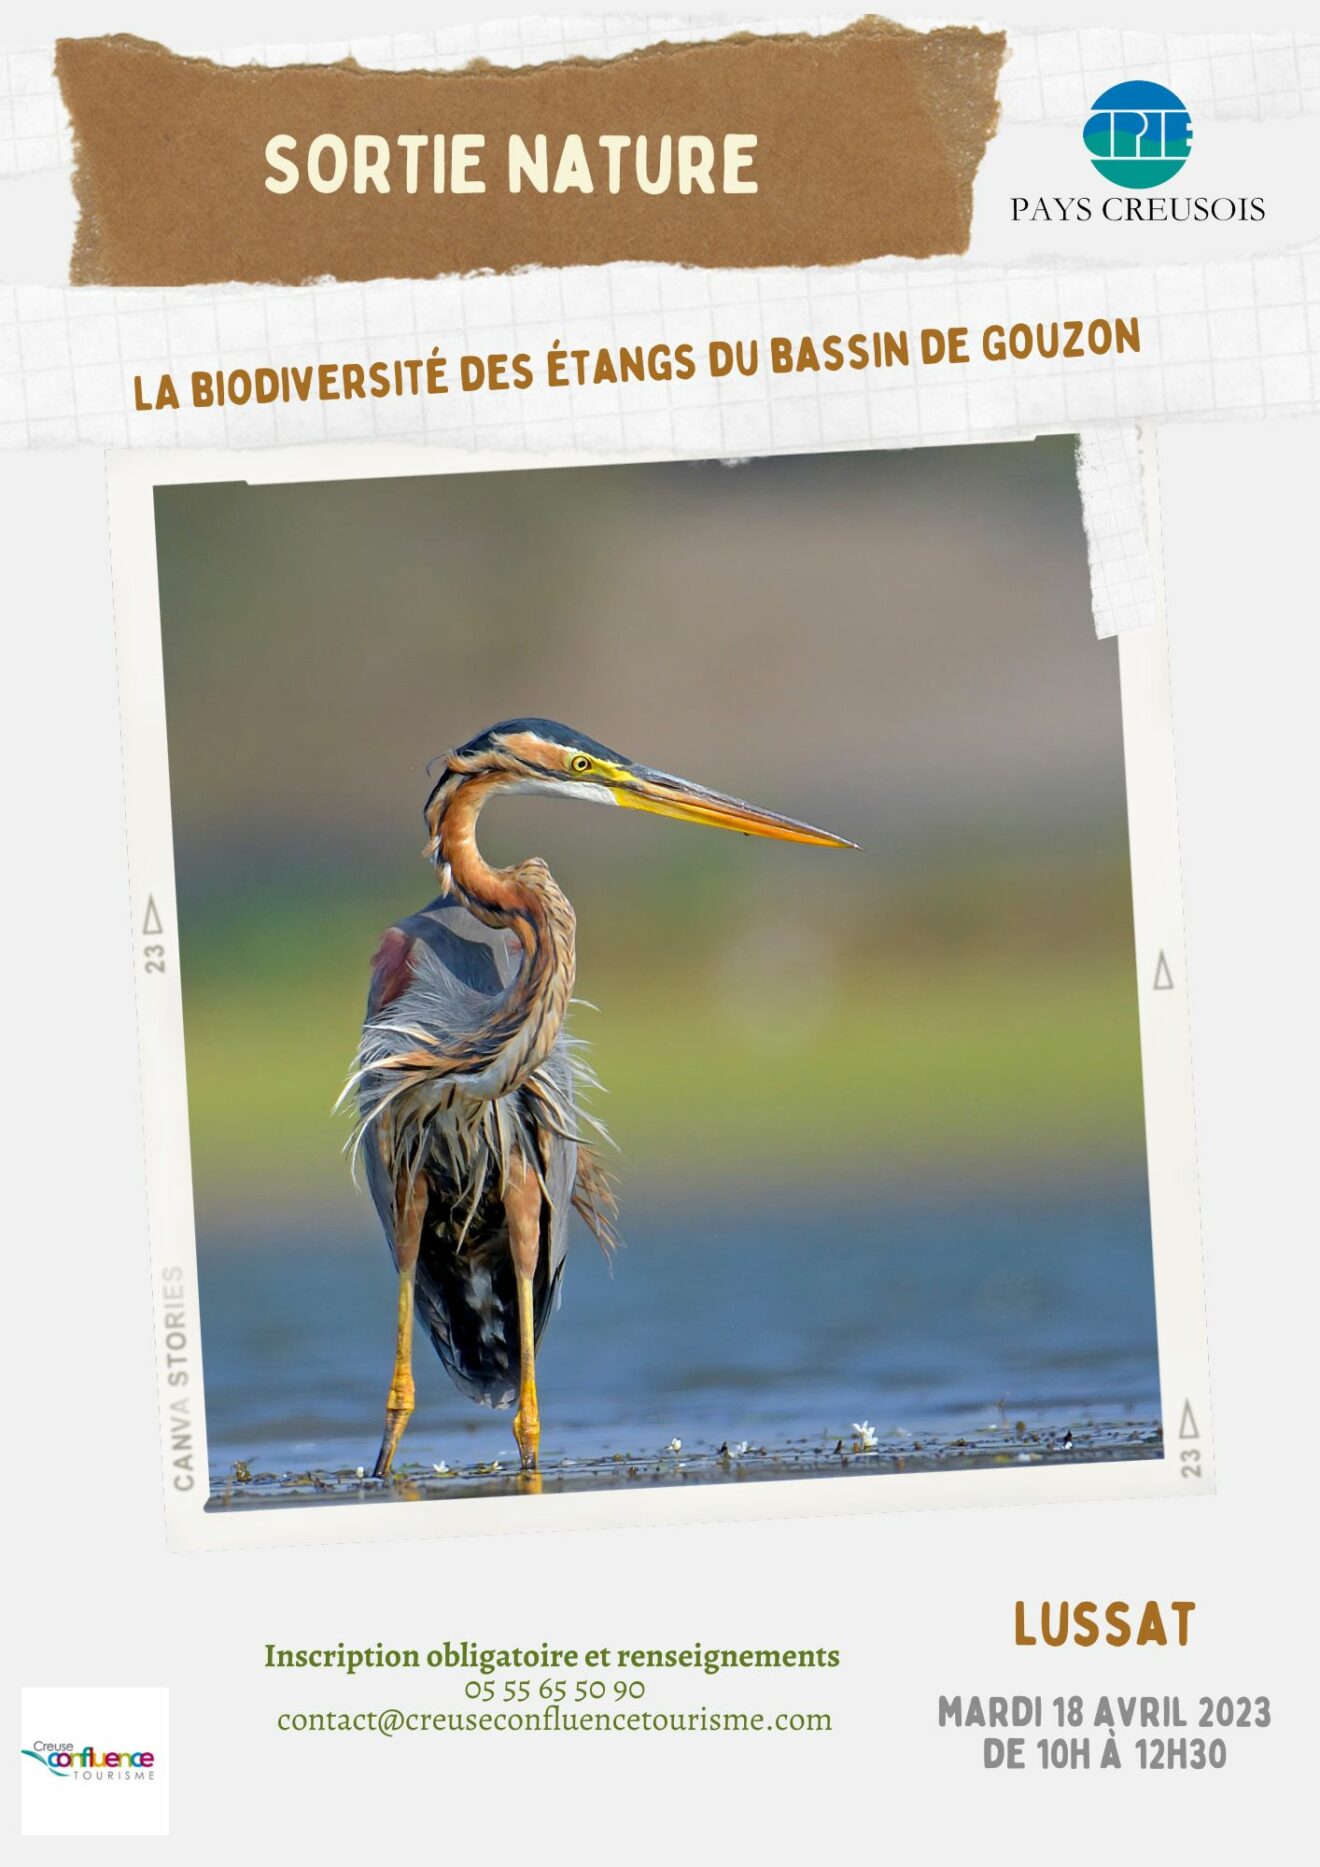 La biodiversité des étangs du bassin de Gouzon